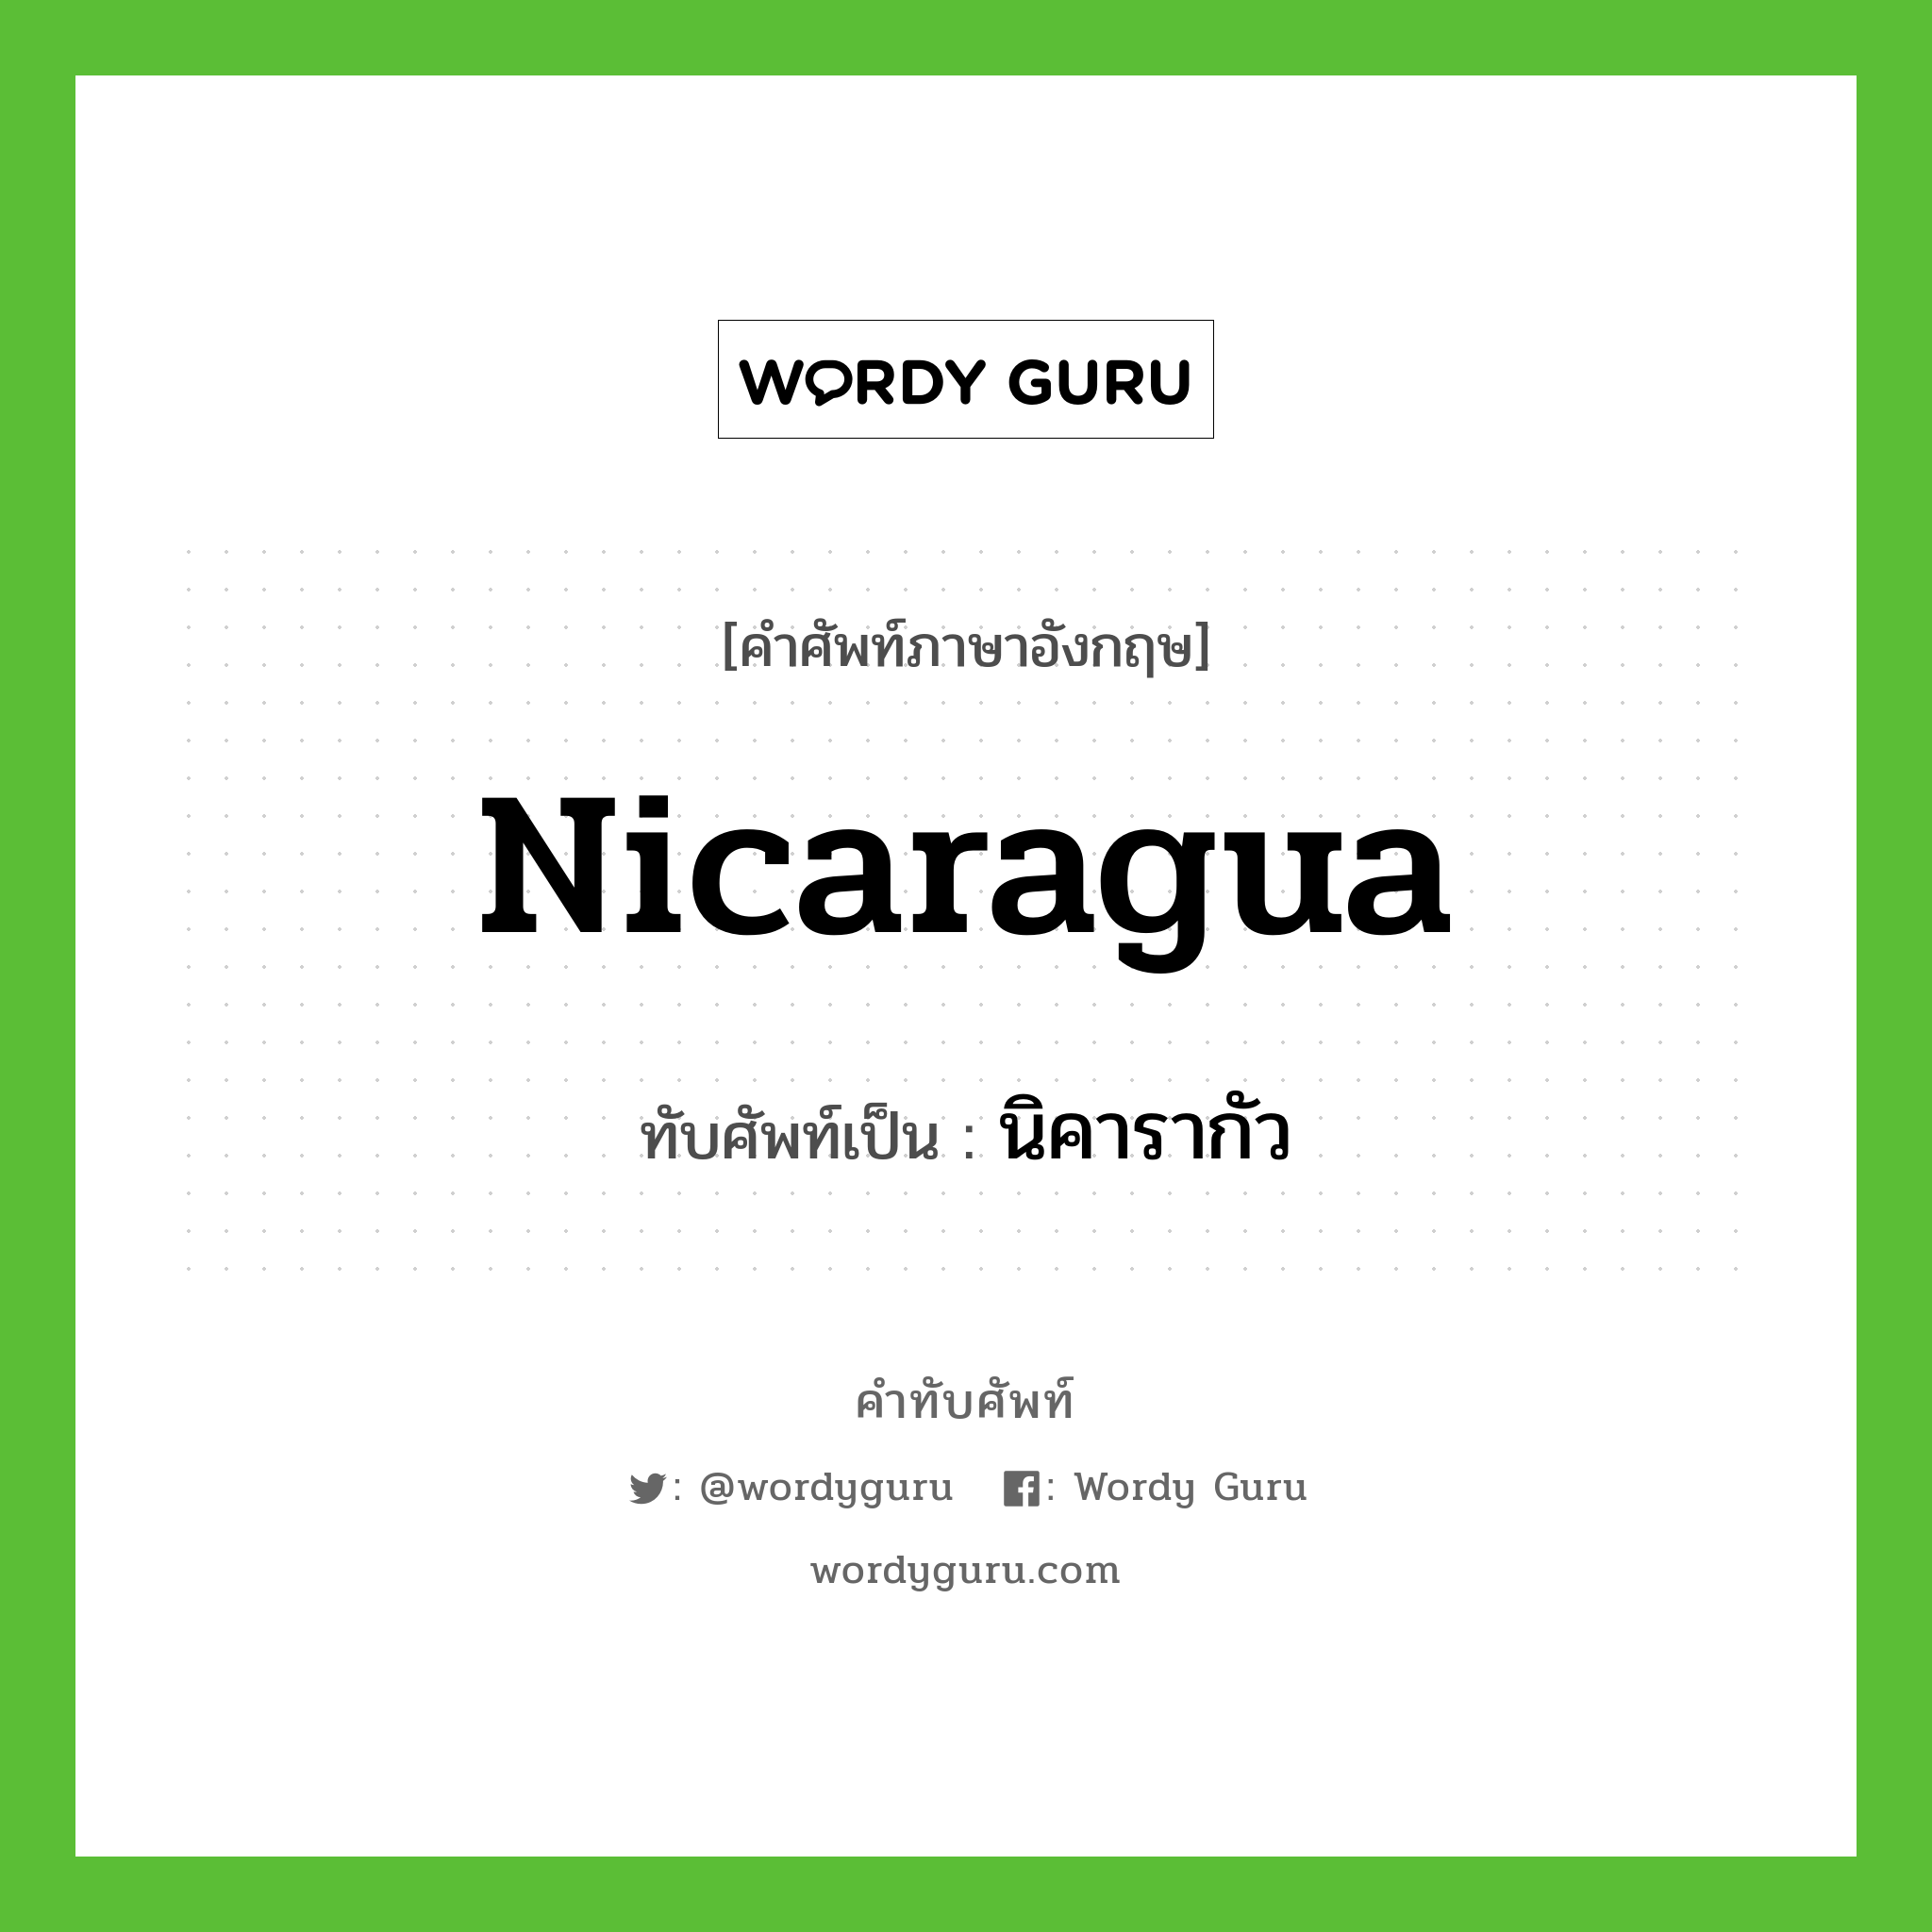 นิคารากัว เขียนอย่างไร?, คำศัพท์ภาษาอังกฤษ นิคารากัว ทับศัพท์เป็น Nicaragua